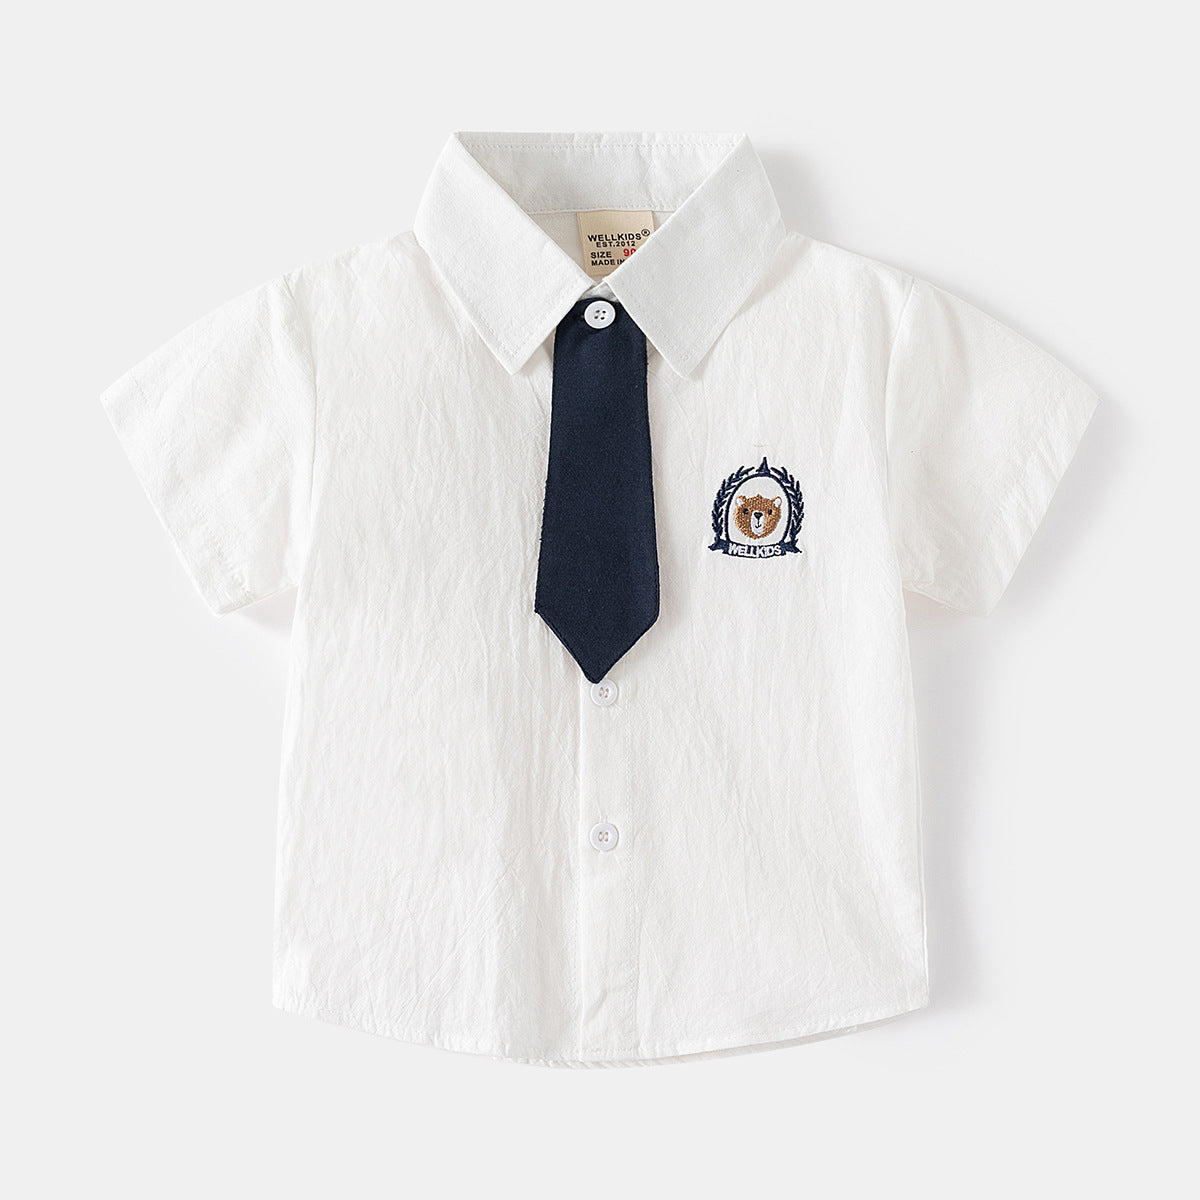 [5131078] - Baju Atasan Kemeja Lengan Pendek Fashion Anak Laki-Laki - Motif Bear Logo